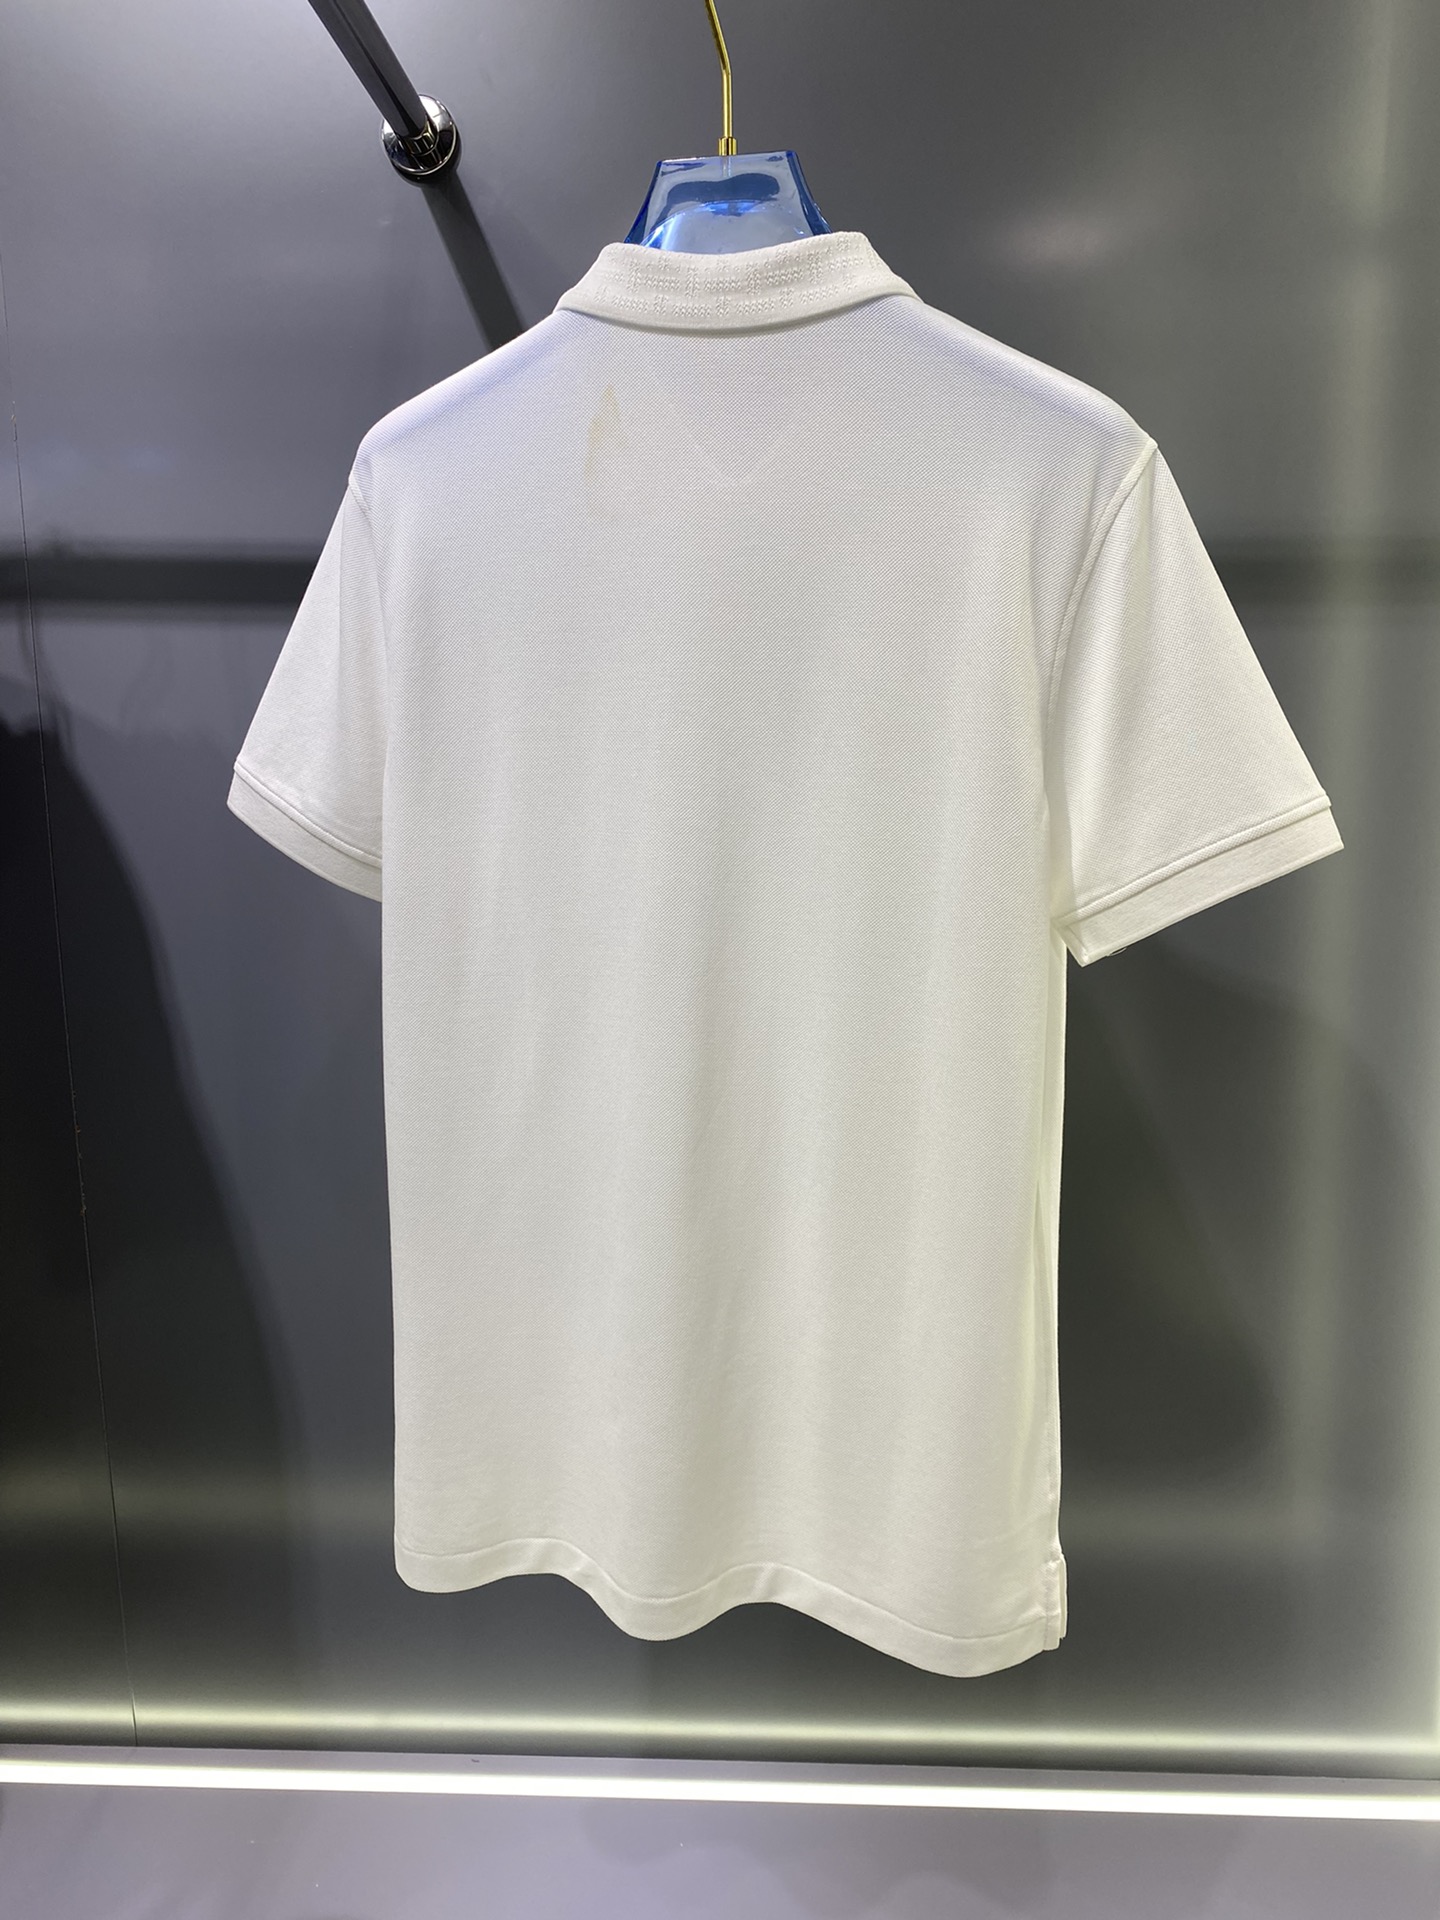 #BV夏季新款短袖T恤Polo客供定制珠地面料简单时尚款超级好看！简单大方的款式！满满的高级感四季可穿颜